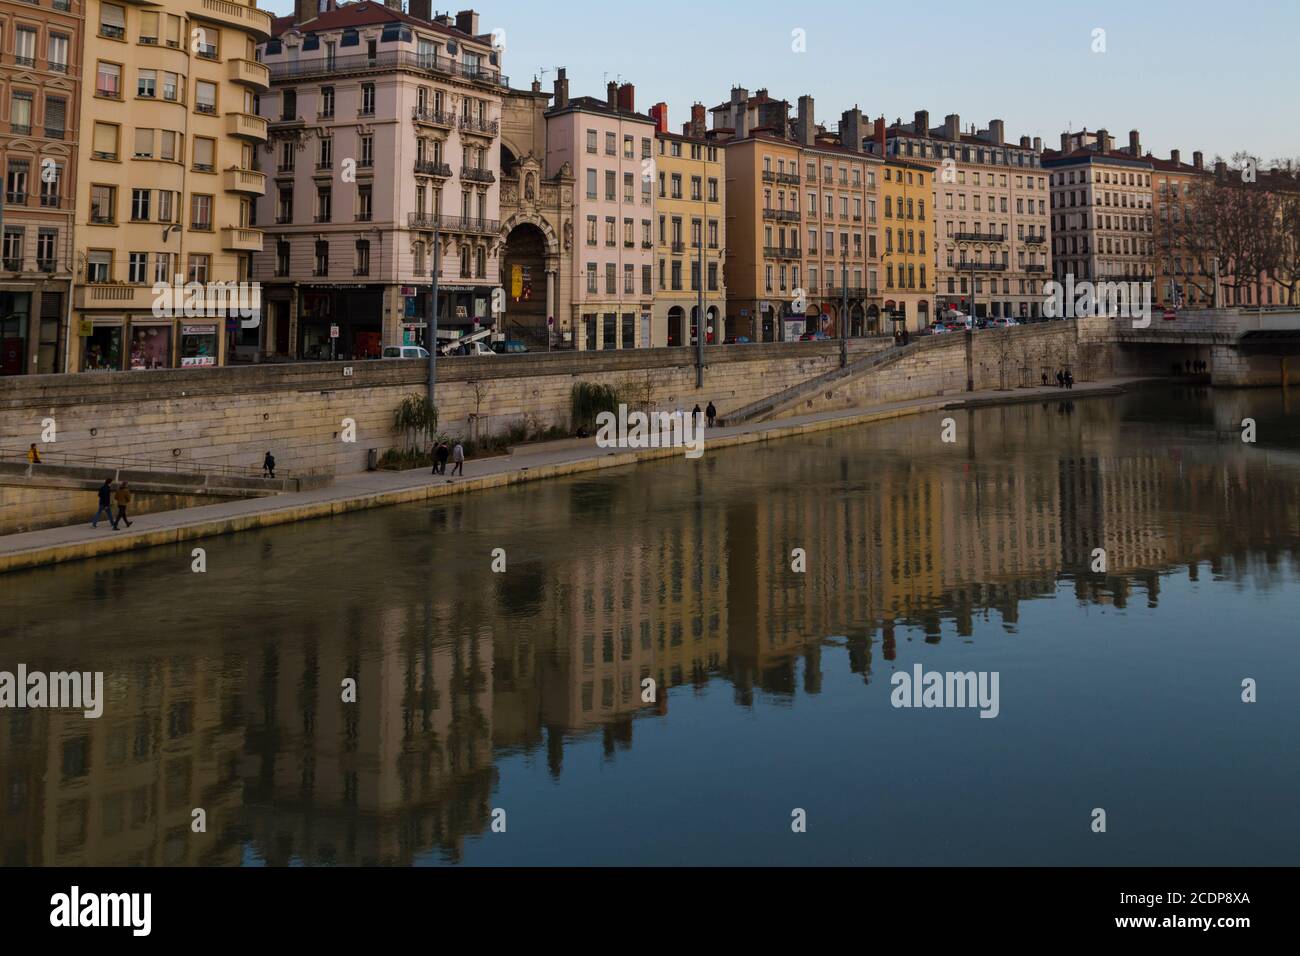 Paesaggio urbano della città di Lione vicino al fiume con i riflessi dell'edificio sull'acqua Foto Stock